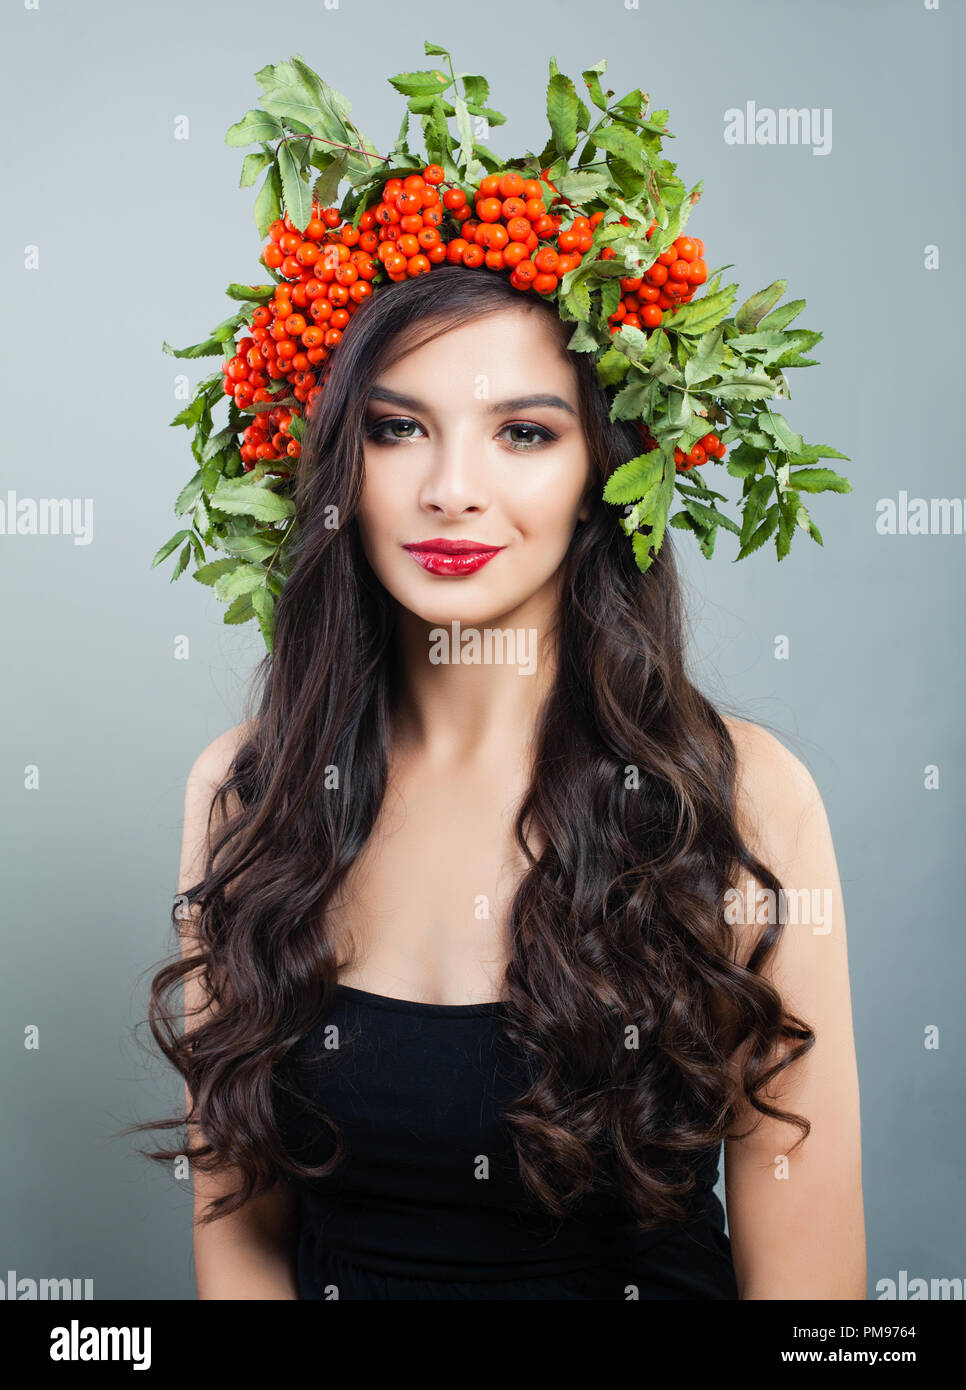 Hübsche brünette Frau Mode Modell mit gesunden curly Frisur, Make-up und roten Beeren und grüne Blätter, Porträt Stockfoto